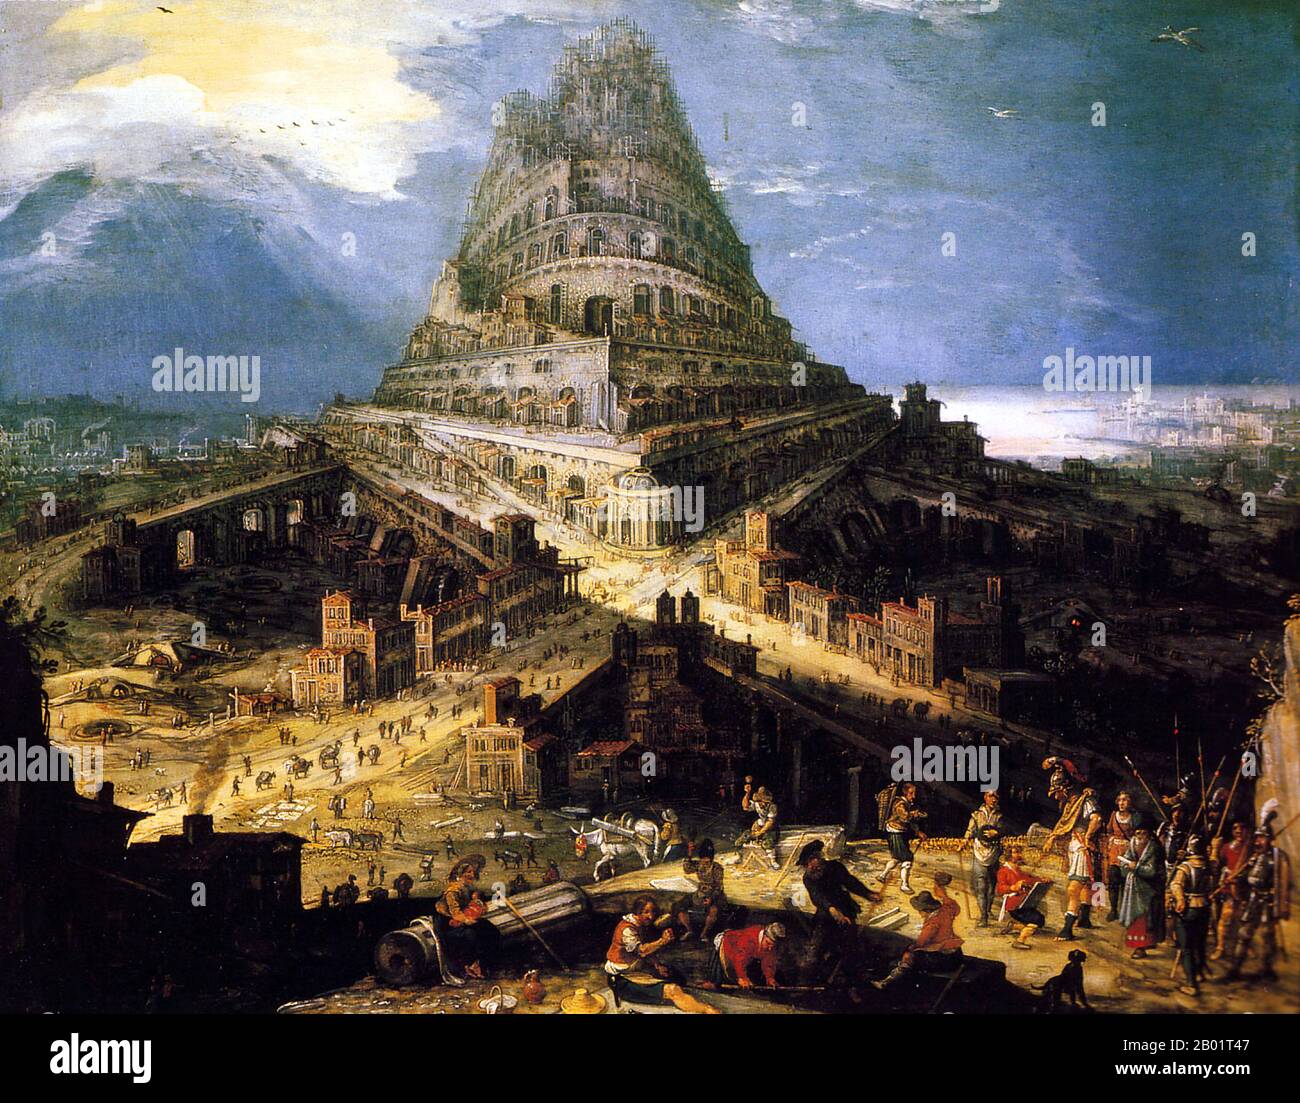 Belgique/Irak/Mésopotamie : 'la Tour de Babel'. Peinture à l'huile sur cuivre de Hendrick Van Cleve (c. 1525-1589), c. 1560-1580. La Tour de Babel, selon le Livre de la Genèse, était une énorme tour construite dans la plaine de Shinar. Selon le récit biblique, une humanité unie des générations suivant le Grand Déluge, parlant une seule langue et migrant de l'est, est venue au pays de Shinar, où ils ont résolu de construire une ville avec une tour "avec son sommet dans les cieux... de peur que nous ne soyons dispersés à l'étranger sur la face de la Terre". Banque D'Images